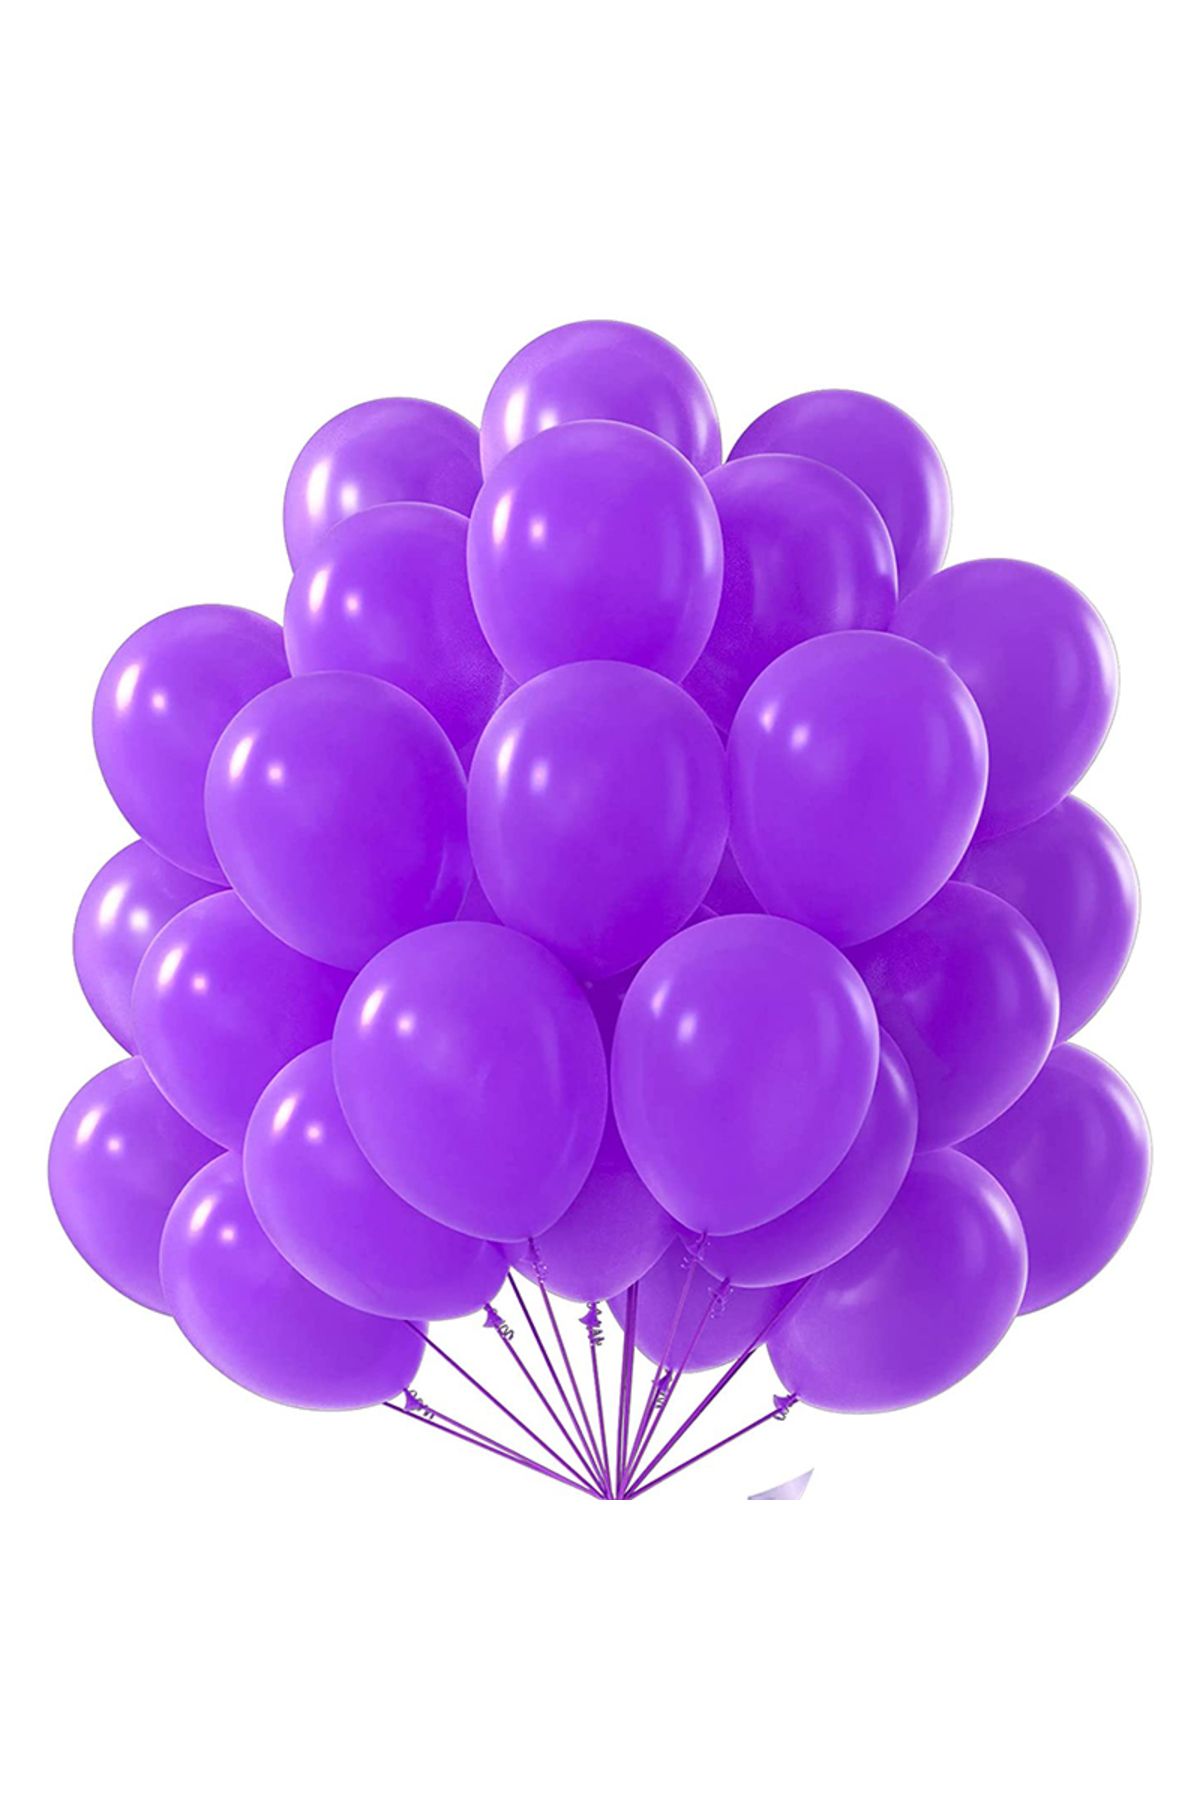 pazariz Lateks Balon Parti Organizasyon Balonu 9/A düğün doğum günü dekorasyon 20 Adet